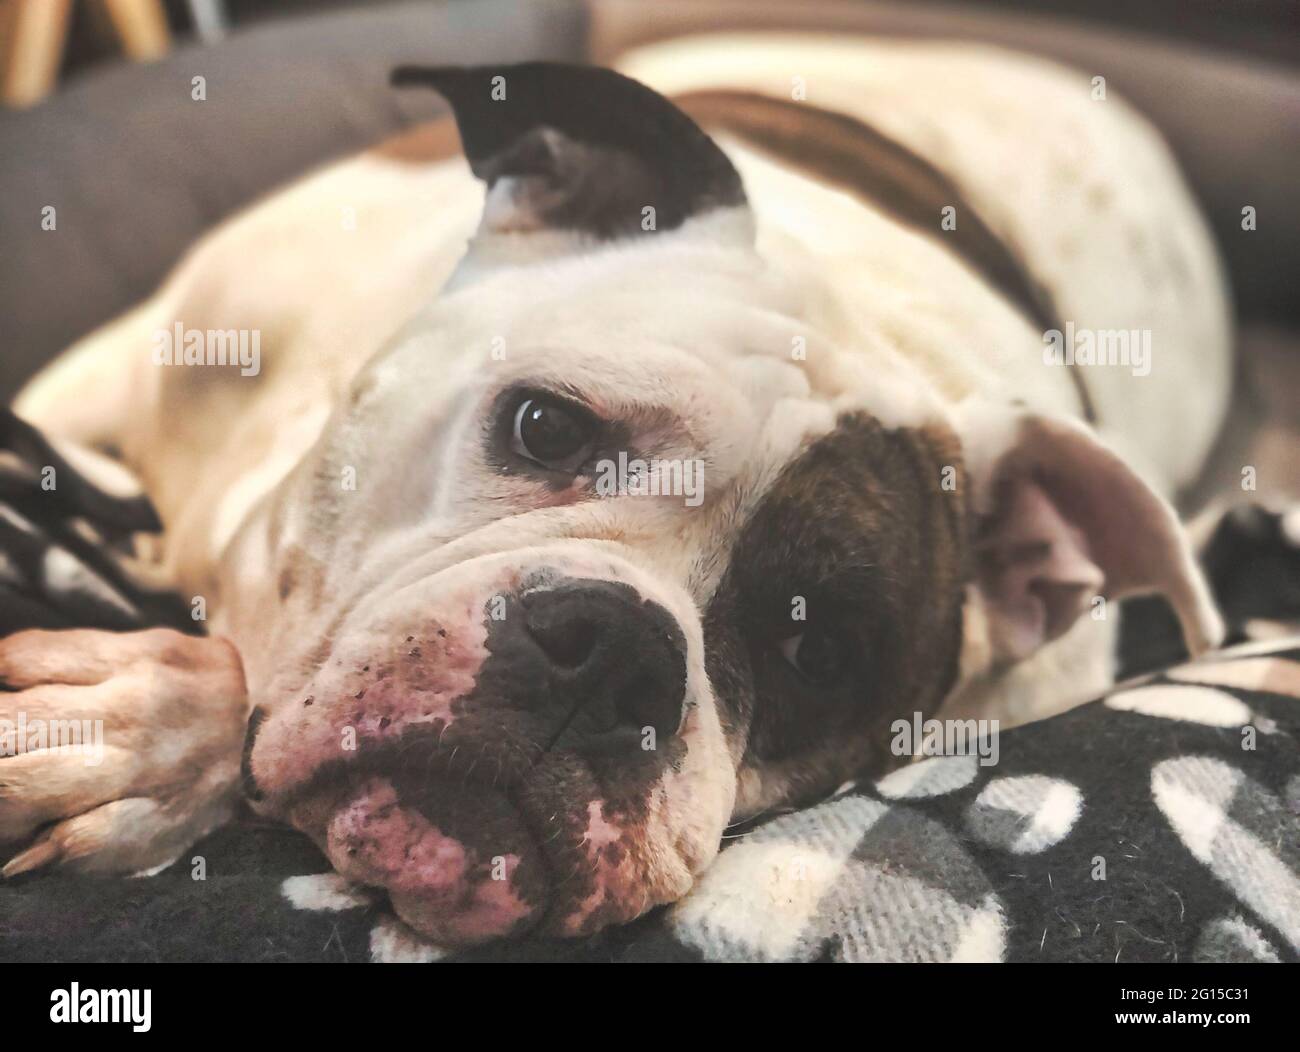 Bulldog victorien dans un lit de chien : un adorable chien Bulldog se pose dans un lit avec une couverture sur sa tête, blanc avec des patches de tarte chauve dont un sur son e Banque D'Images